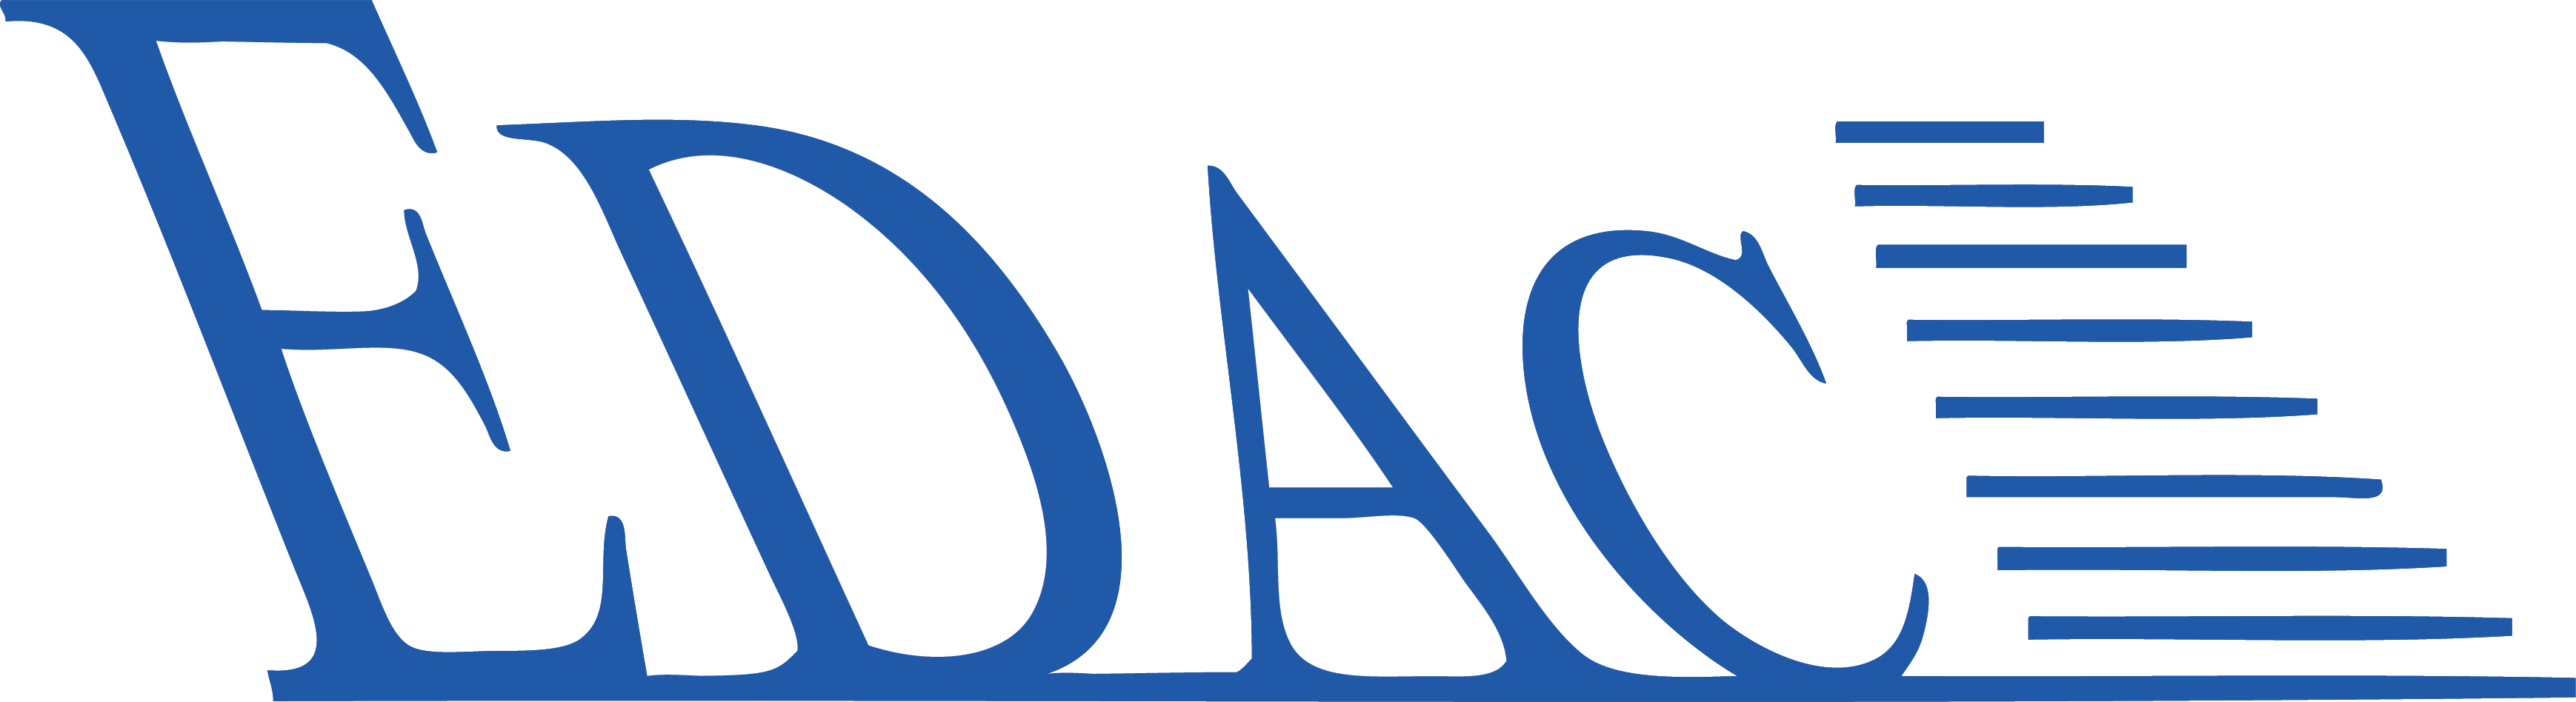 EDACPOWER Logo